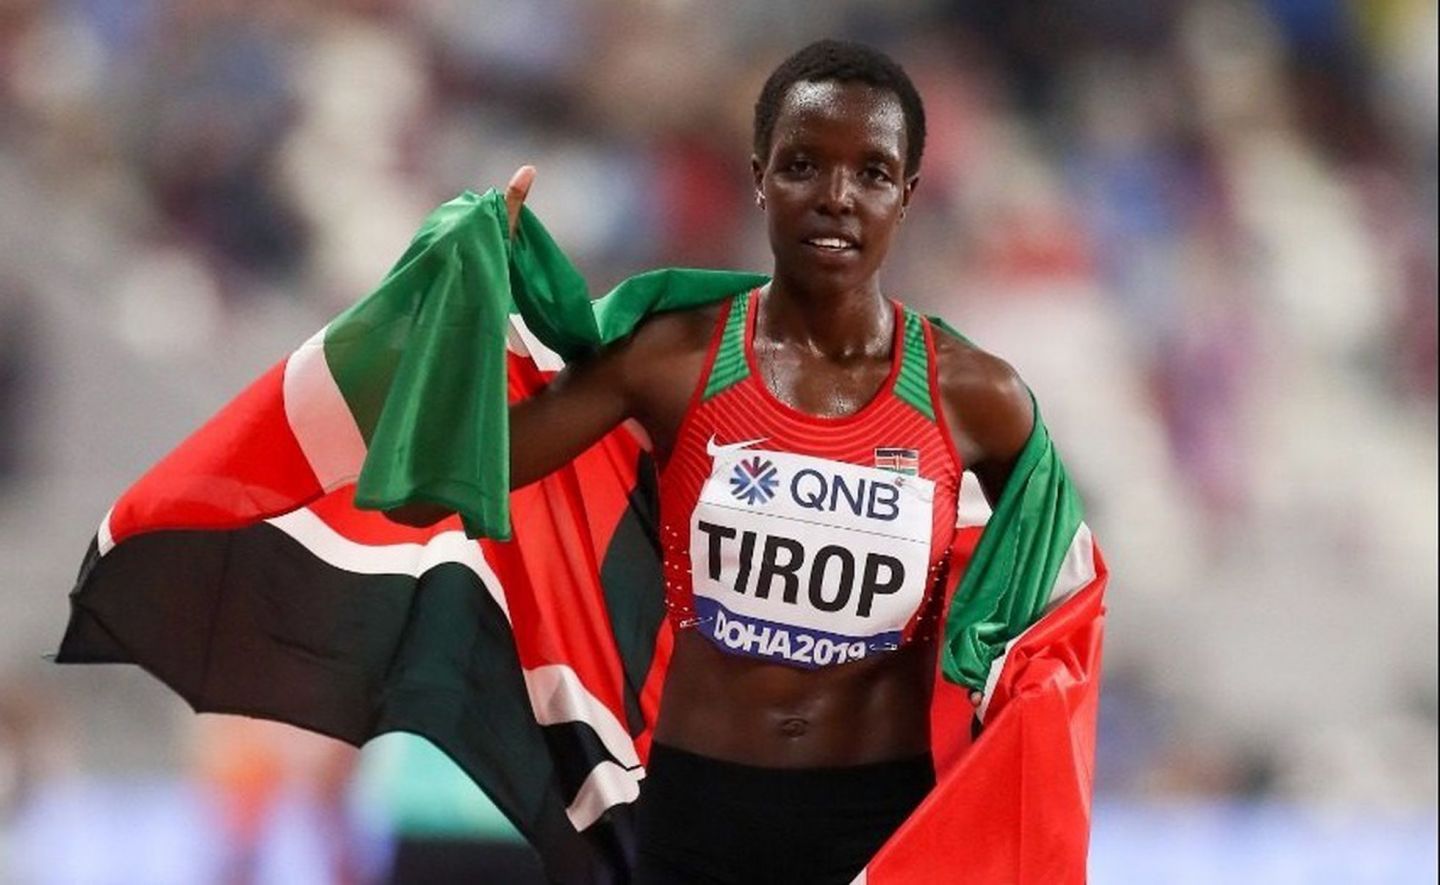 Asesinan ’joya’ olímpica africana de 25 años de edad